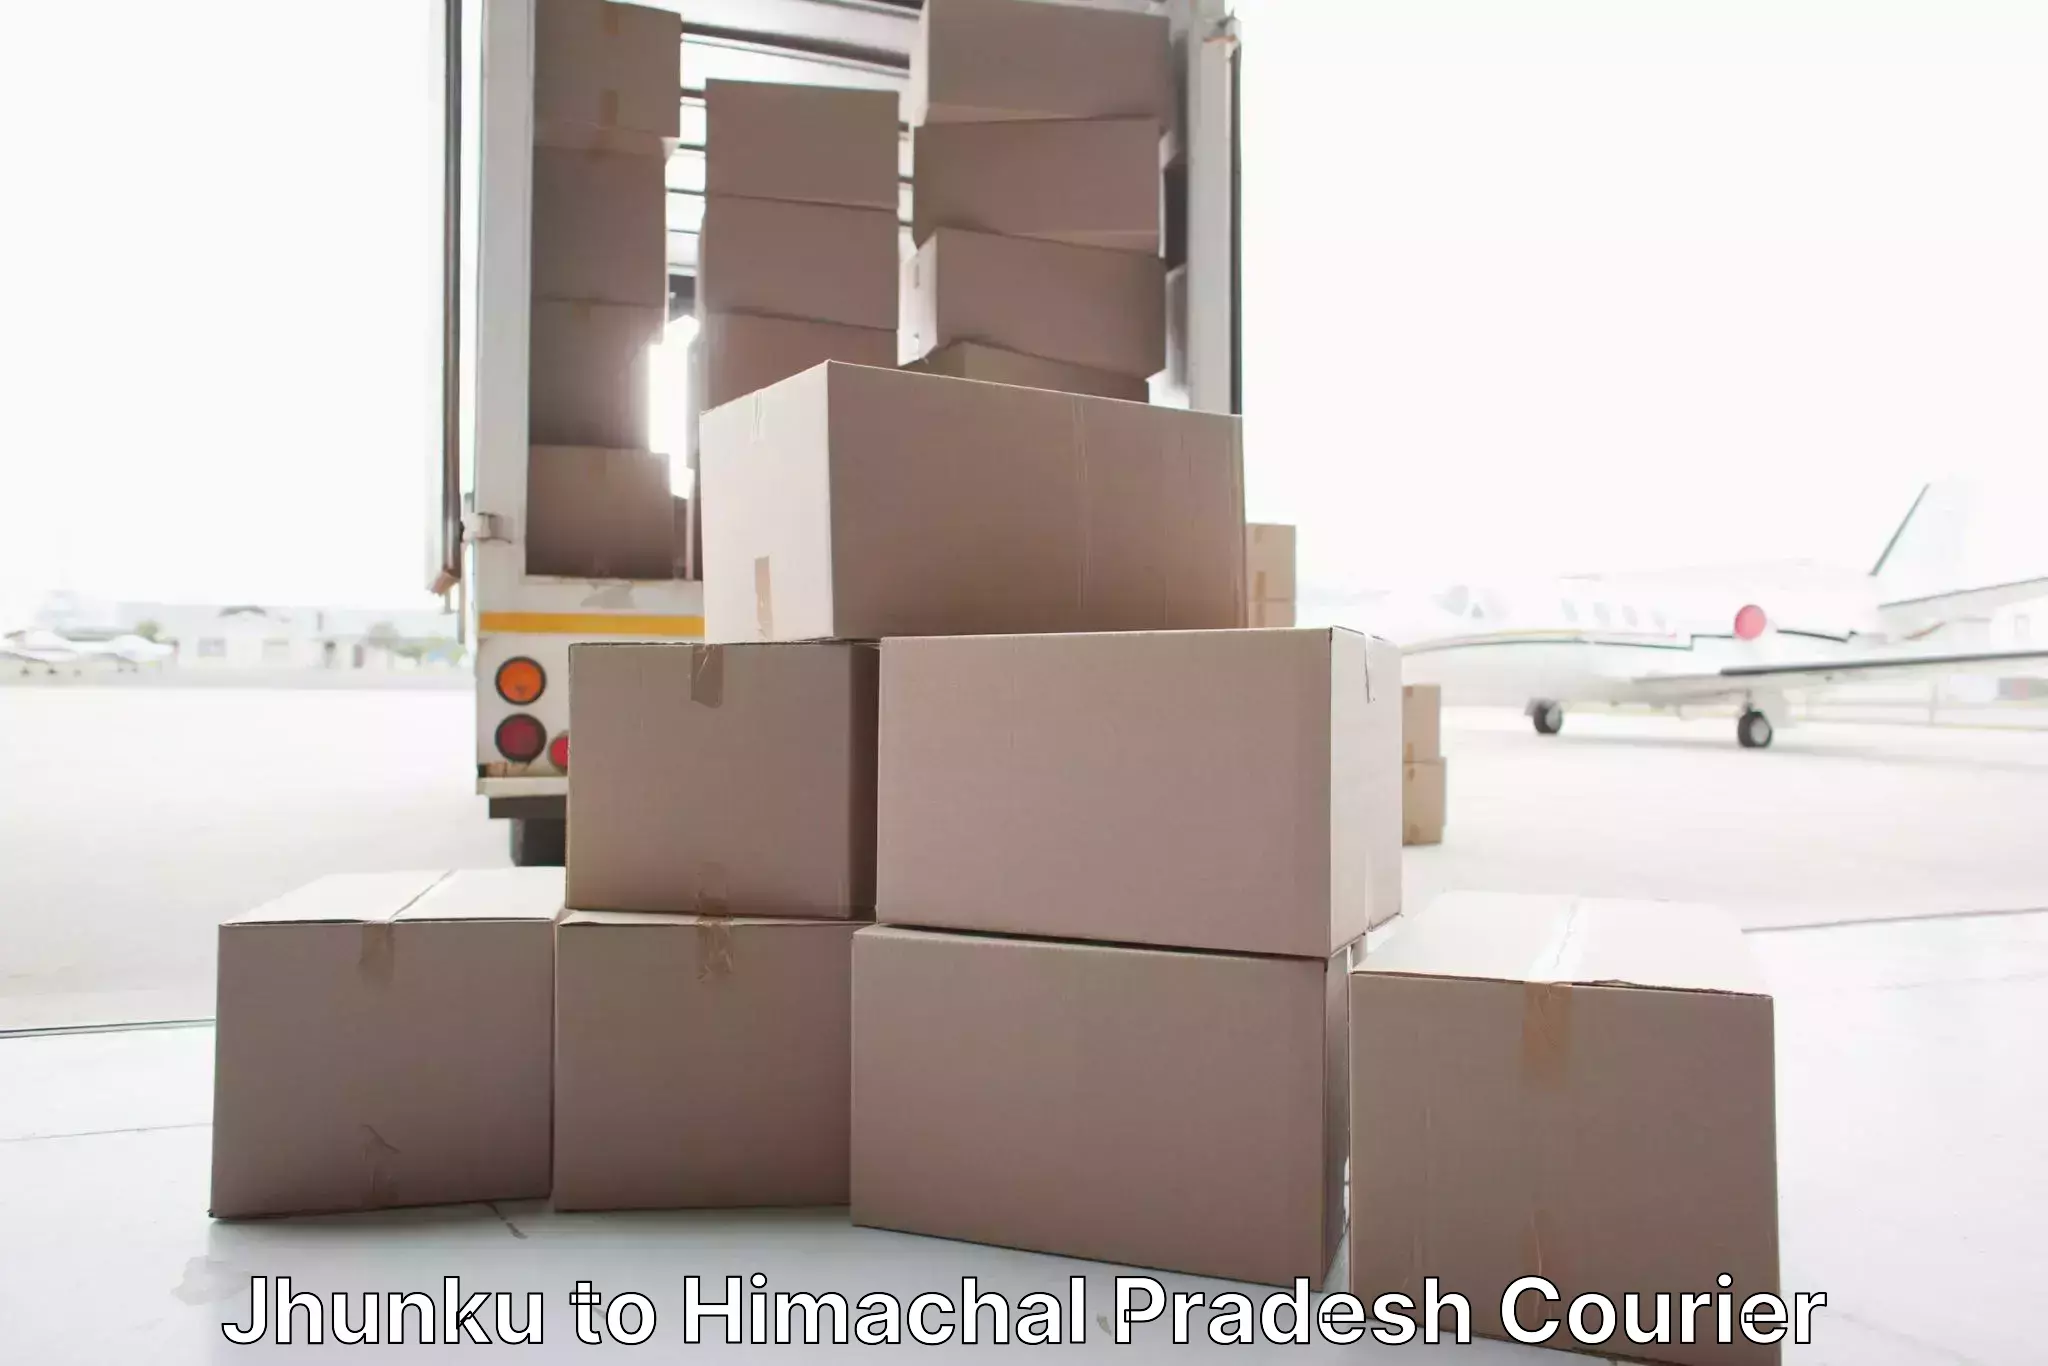 Customized moving solutions Jhunku to IIT Mandi